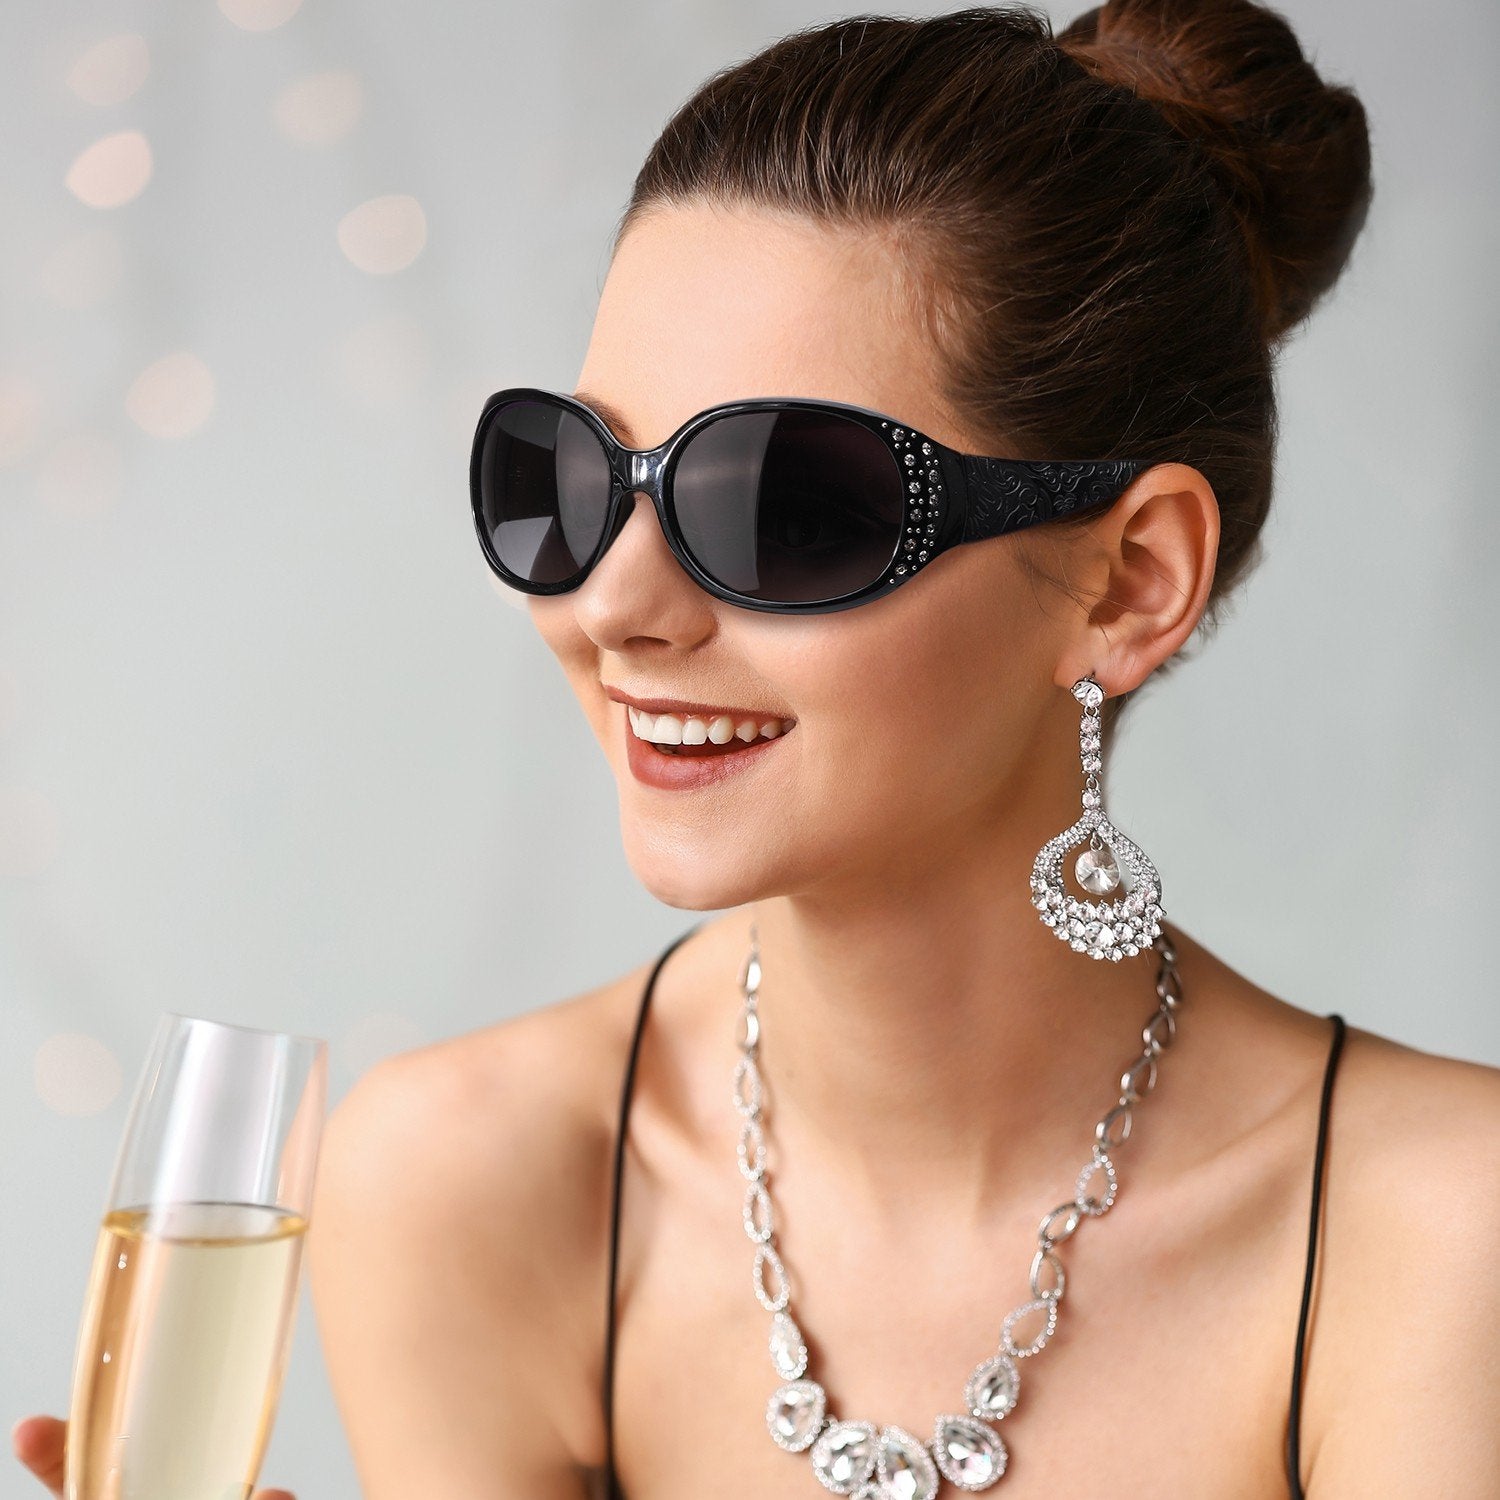 LVIOE Prescription Sunglasses Rx Sun for Women-Rhinebeck Glasses